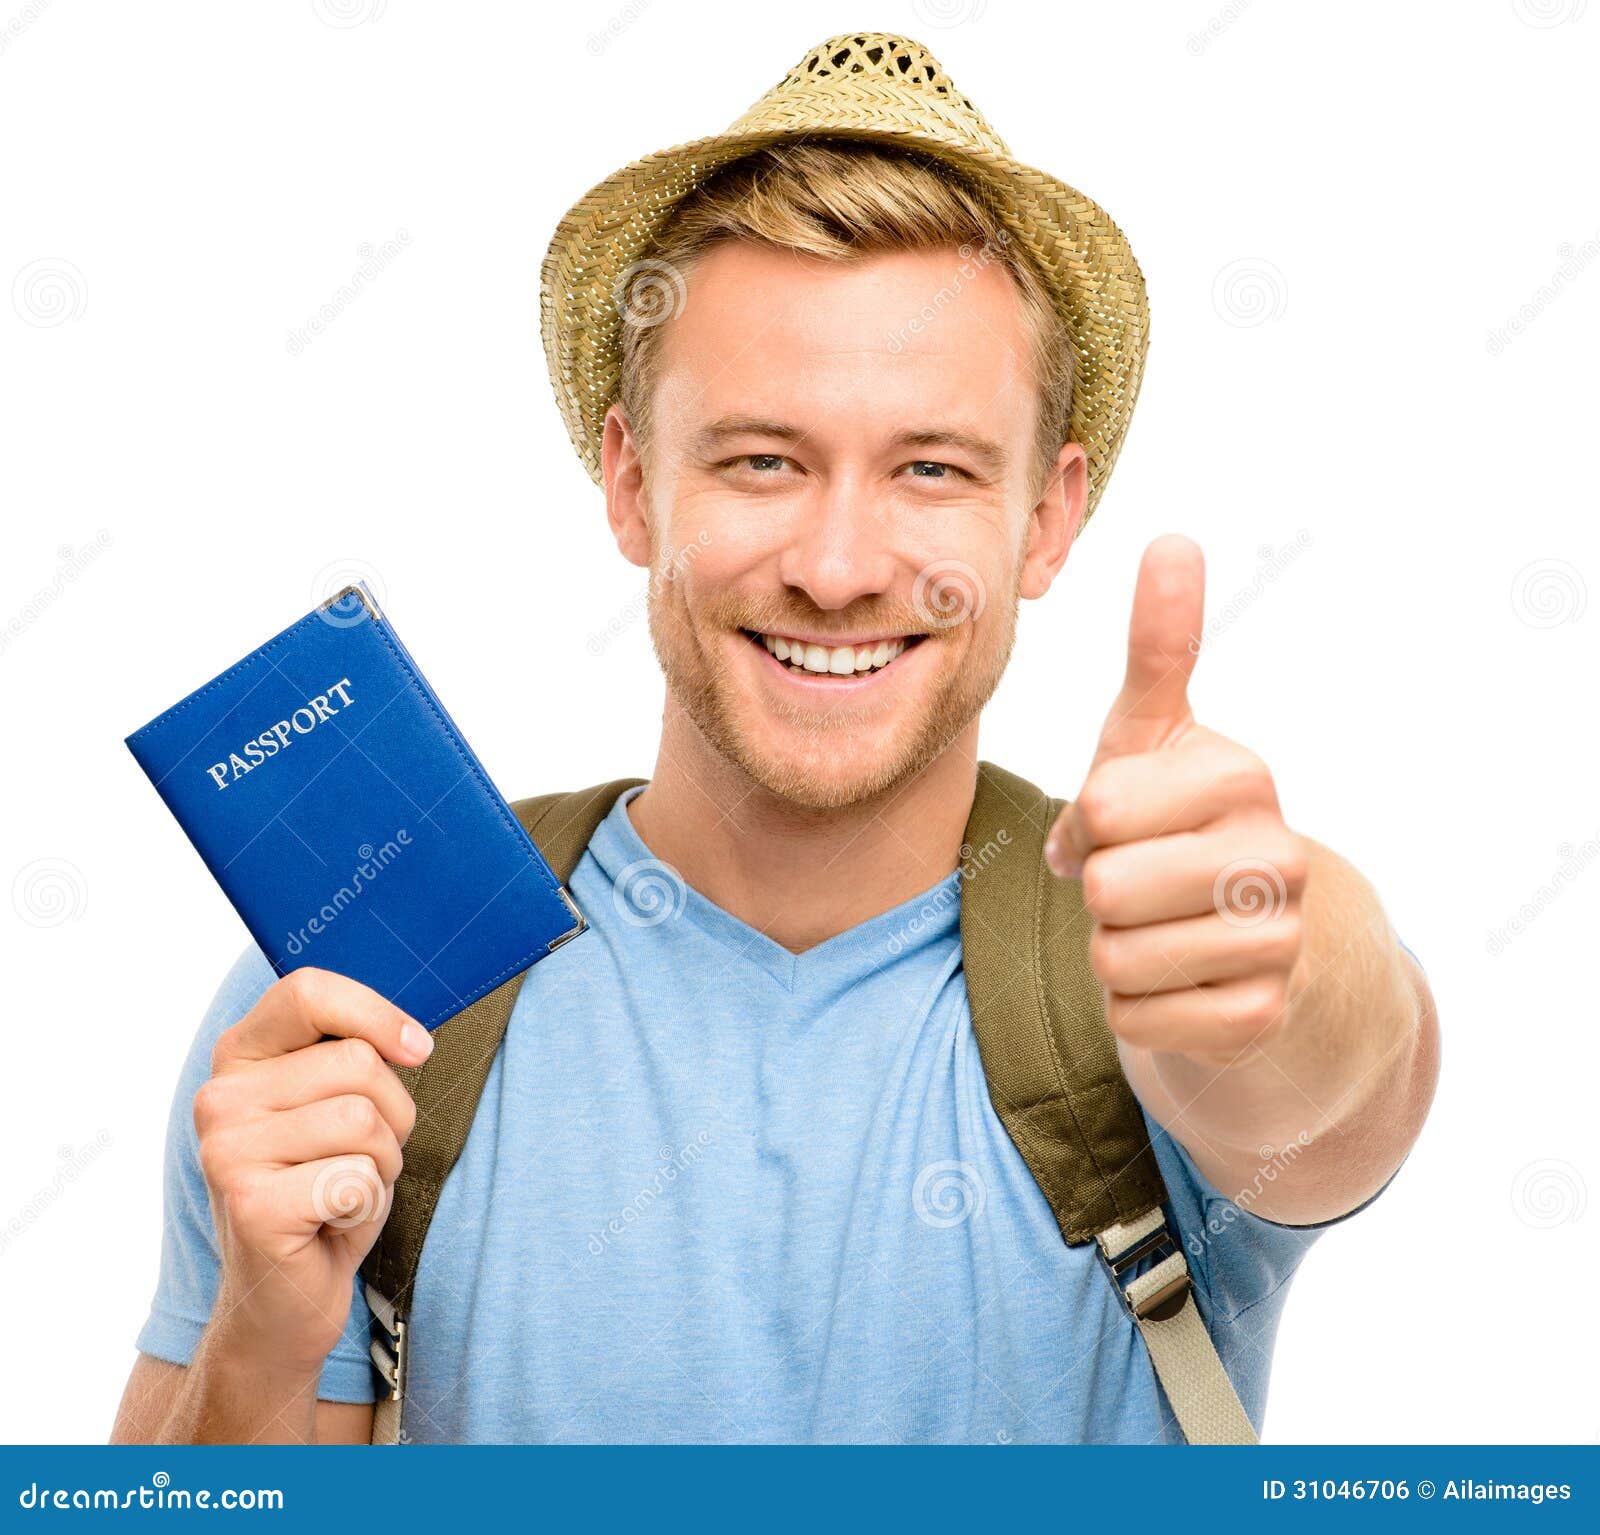 Bạn tò mò muốn biết cảm giác của một khách du lịch hạnh phúc khi giữ trên tay bức ảnh hộ chiếu trắng sáng? Truy cập ngay để xem những hình ảnh tuyệt vời! Bạn sẽ thấy khách du lịch có vẻ rất hạnh phúc và tự hào với bức ảnh hộ chiếu của mình!